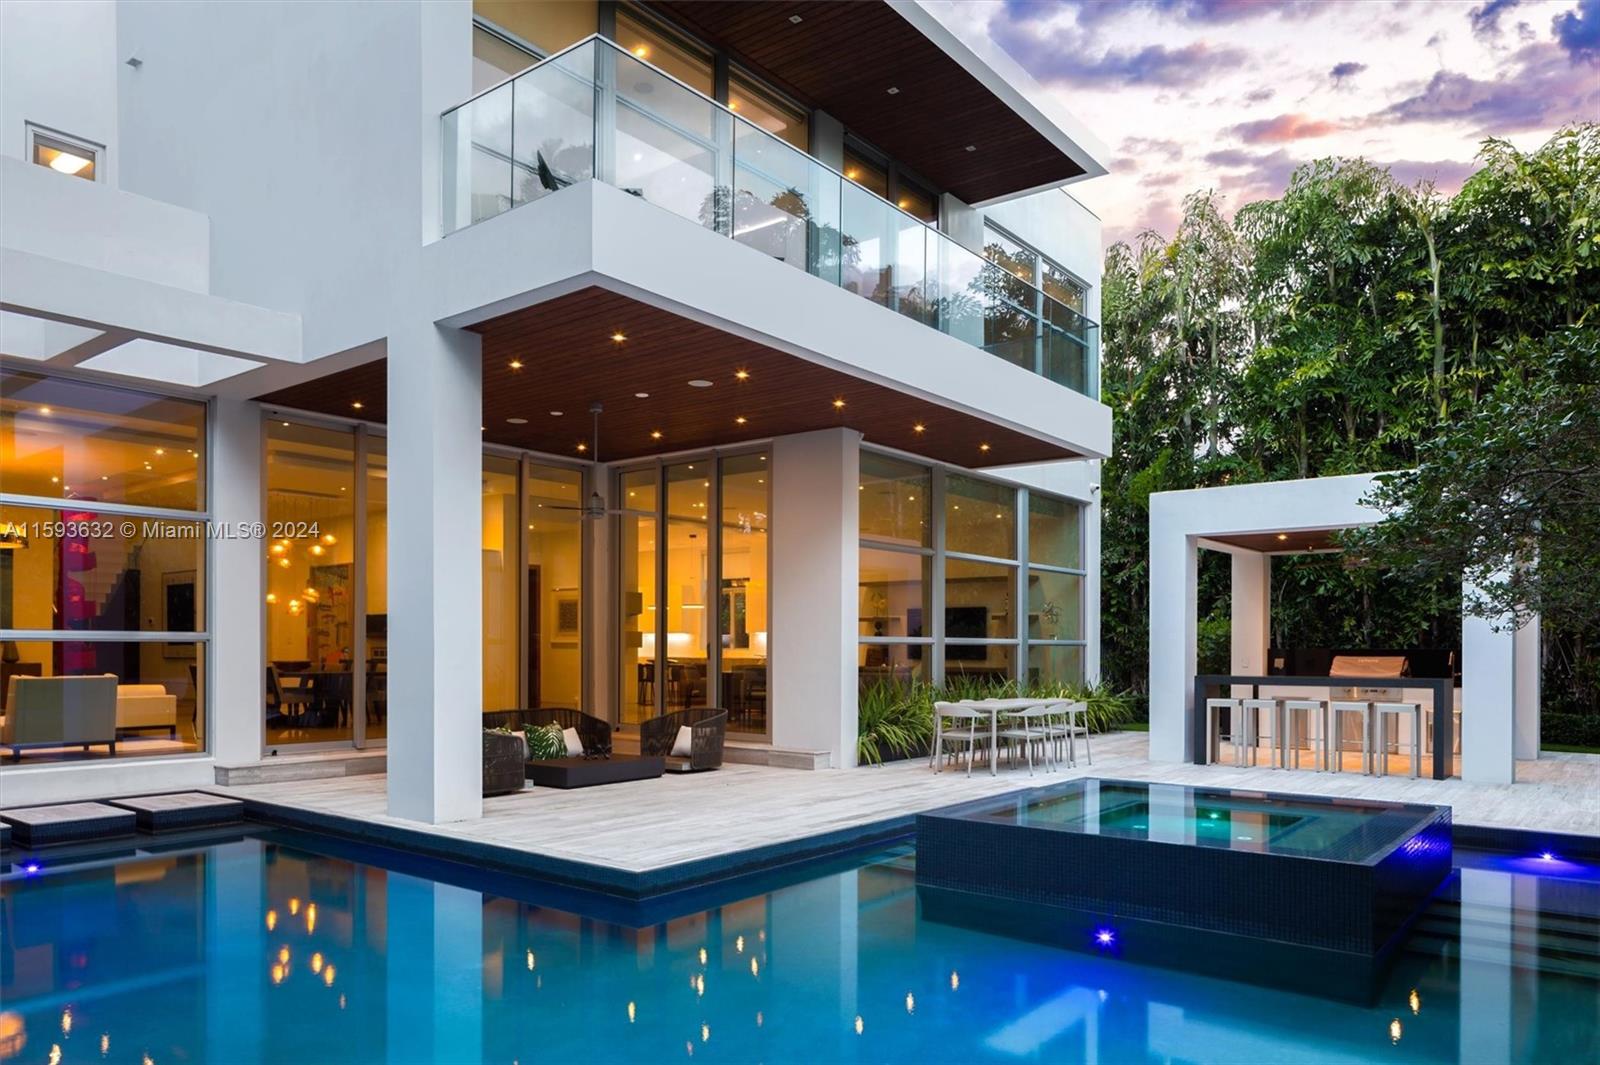 Property for Sale at 675 Golden Beach Dr, Golden Beach, Miami-Dade County, Florida - Bedrooms: 6 
Bathrooms: 8  - $9,500,000